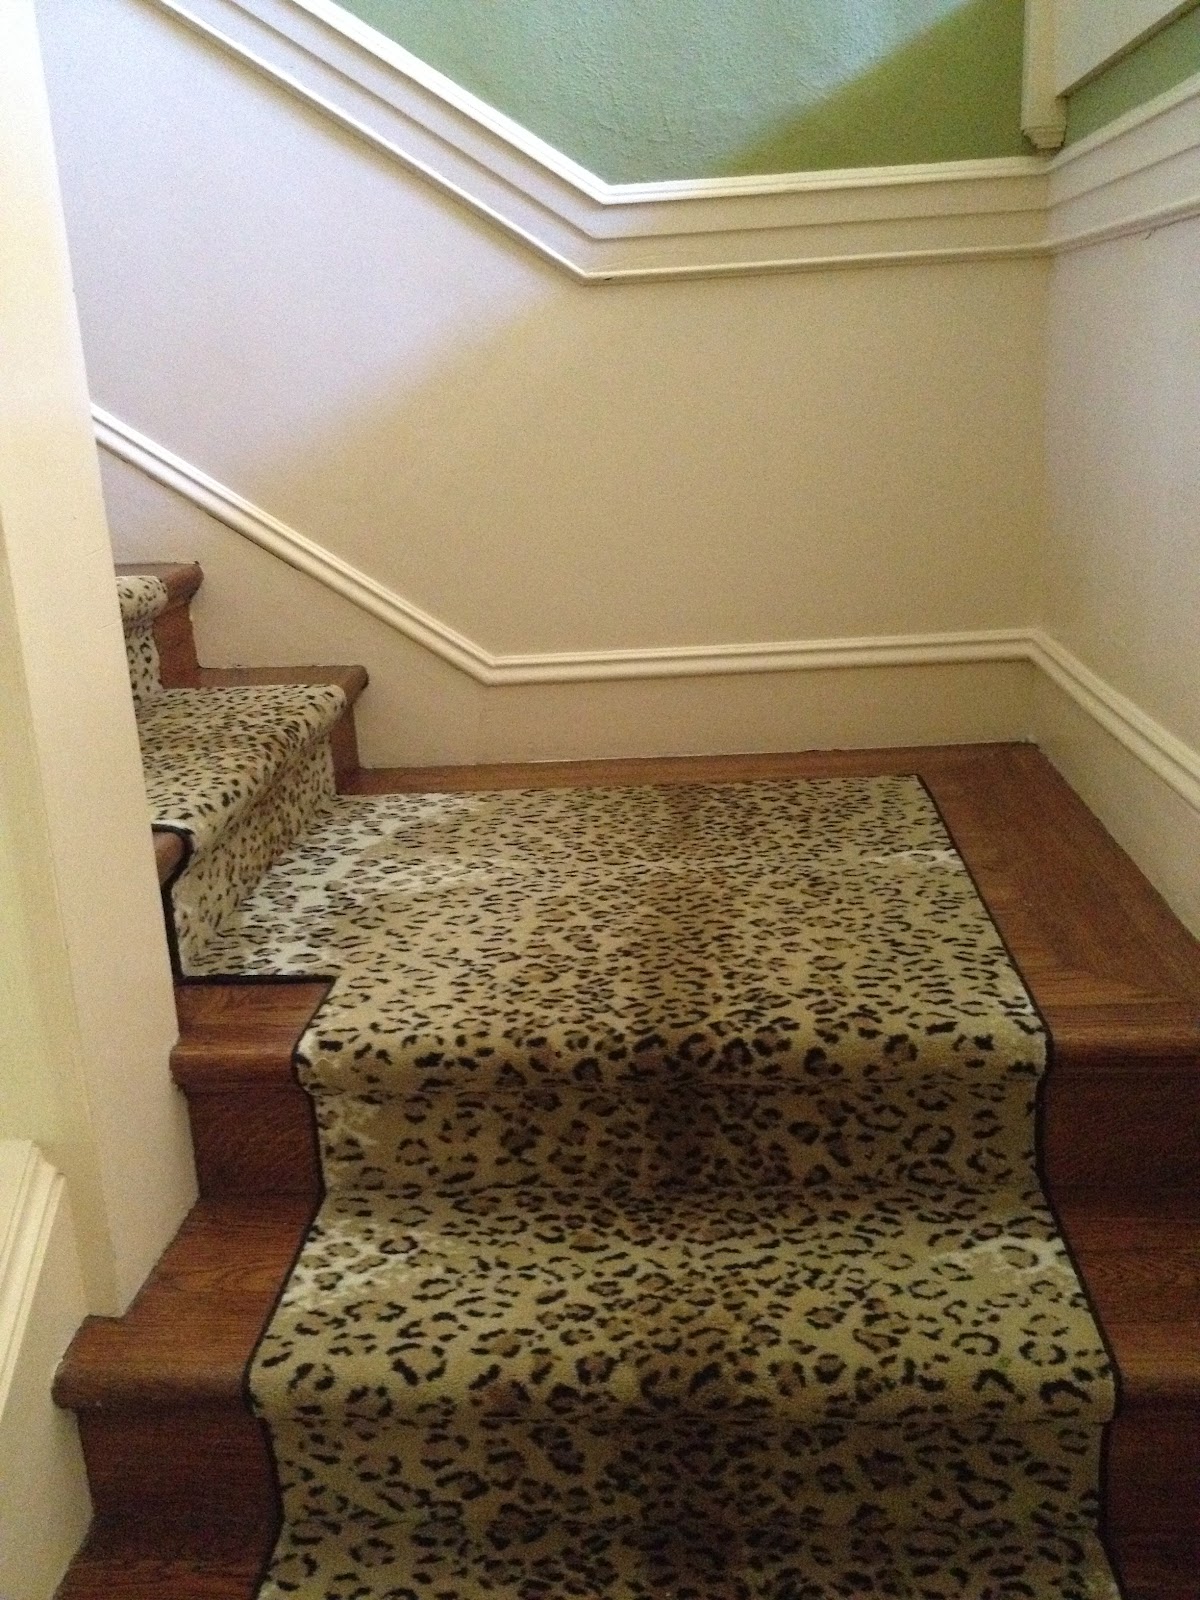 vignette design: I've Never Met A Leopard Print I Didn't Like!